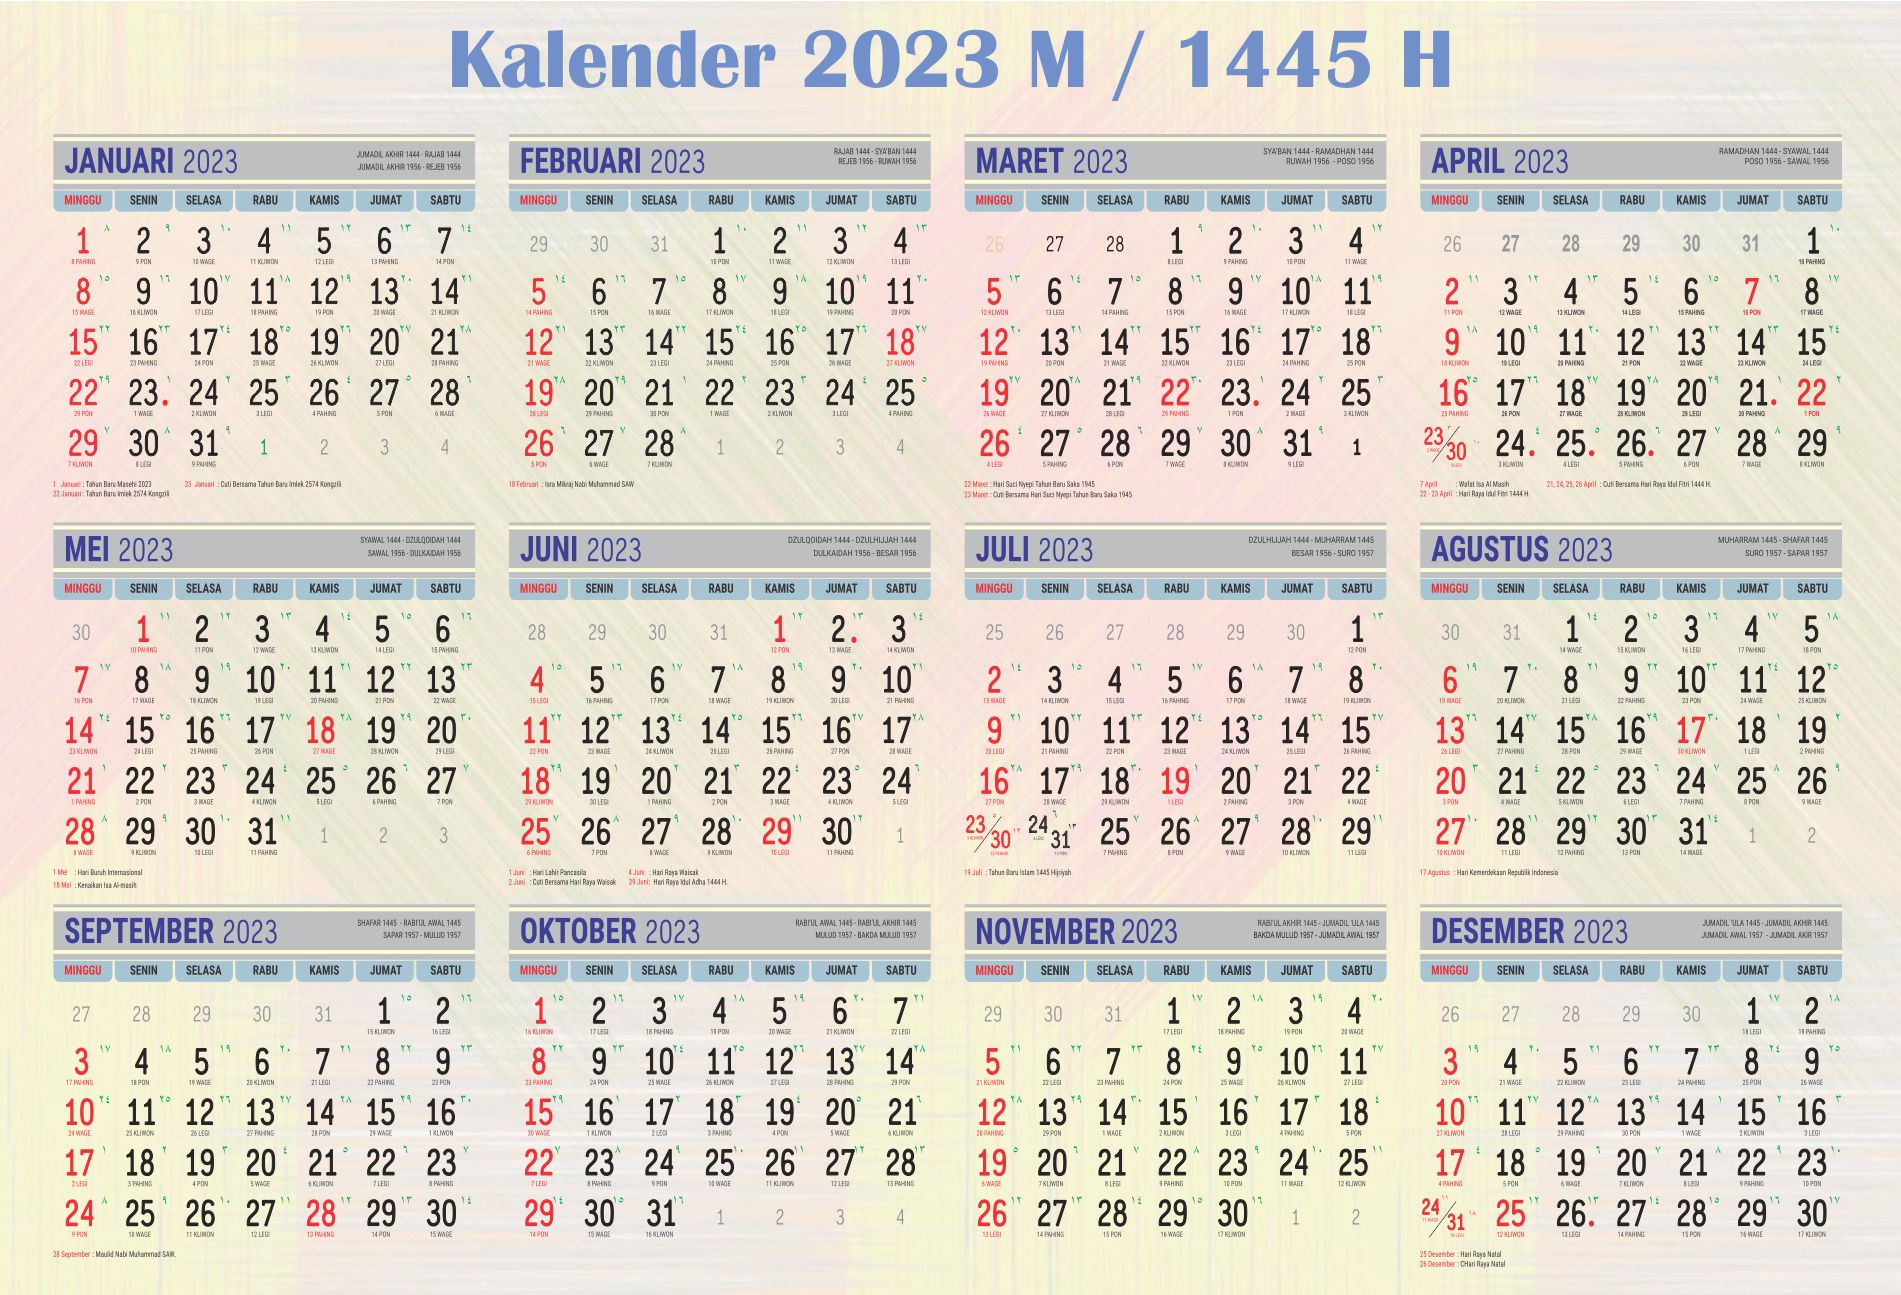 Download Template Kalender Tahun 2023 M 1445 H Ikutan Ngeblog